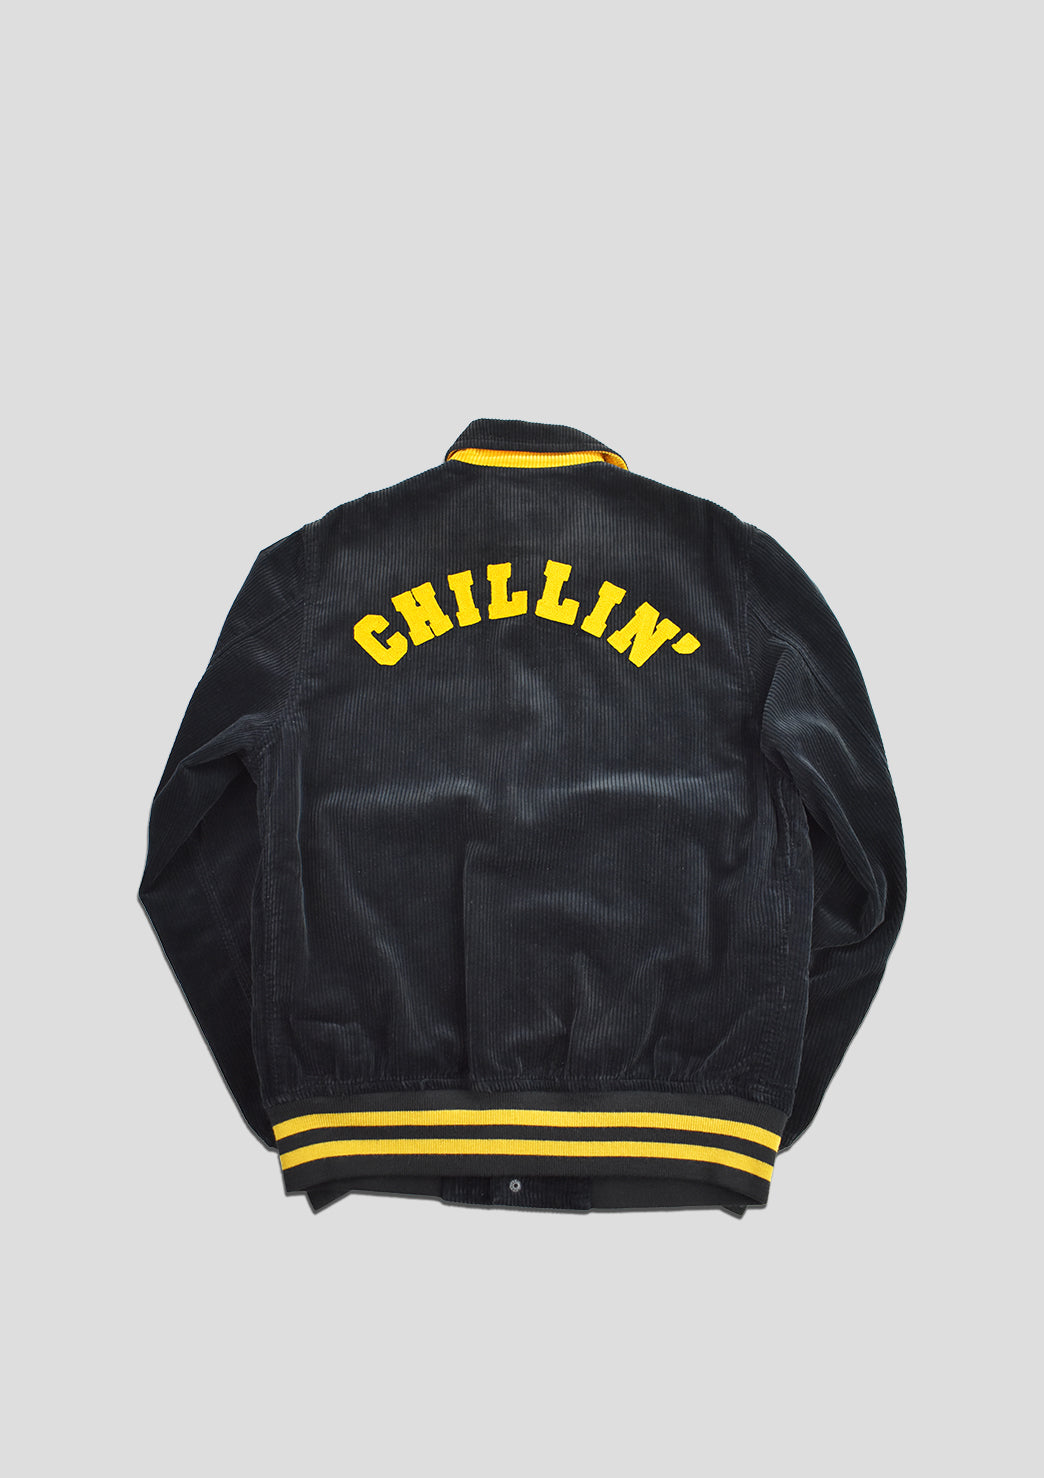 [O/S] Chillin' Varsity Jacket